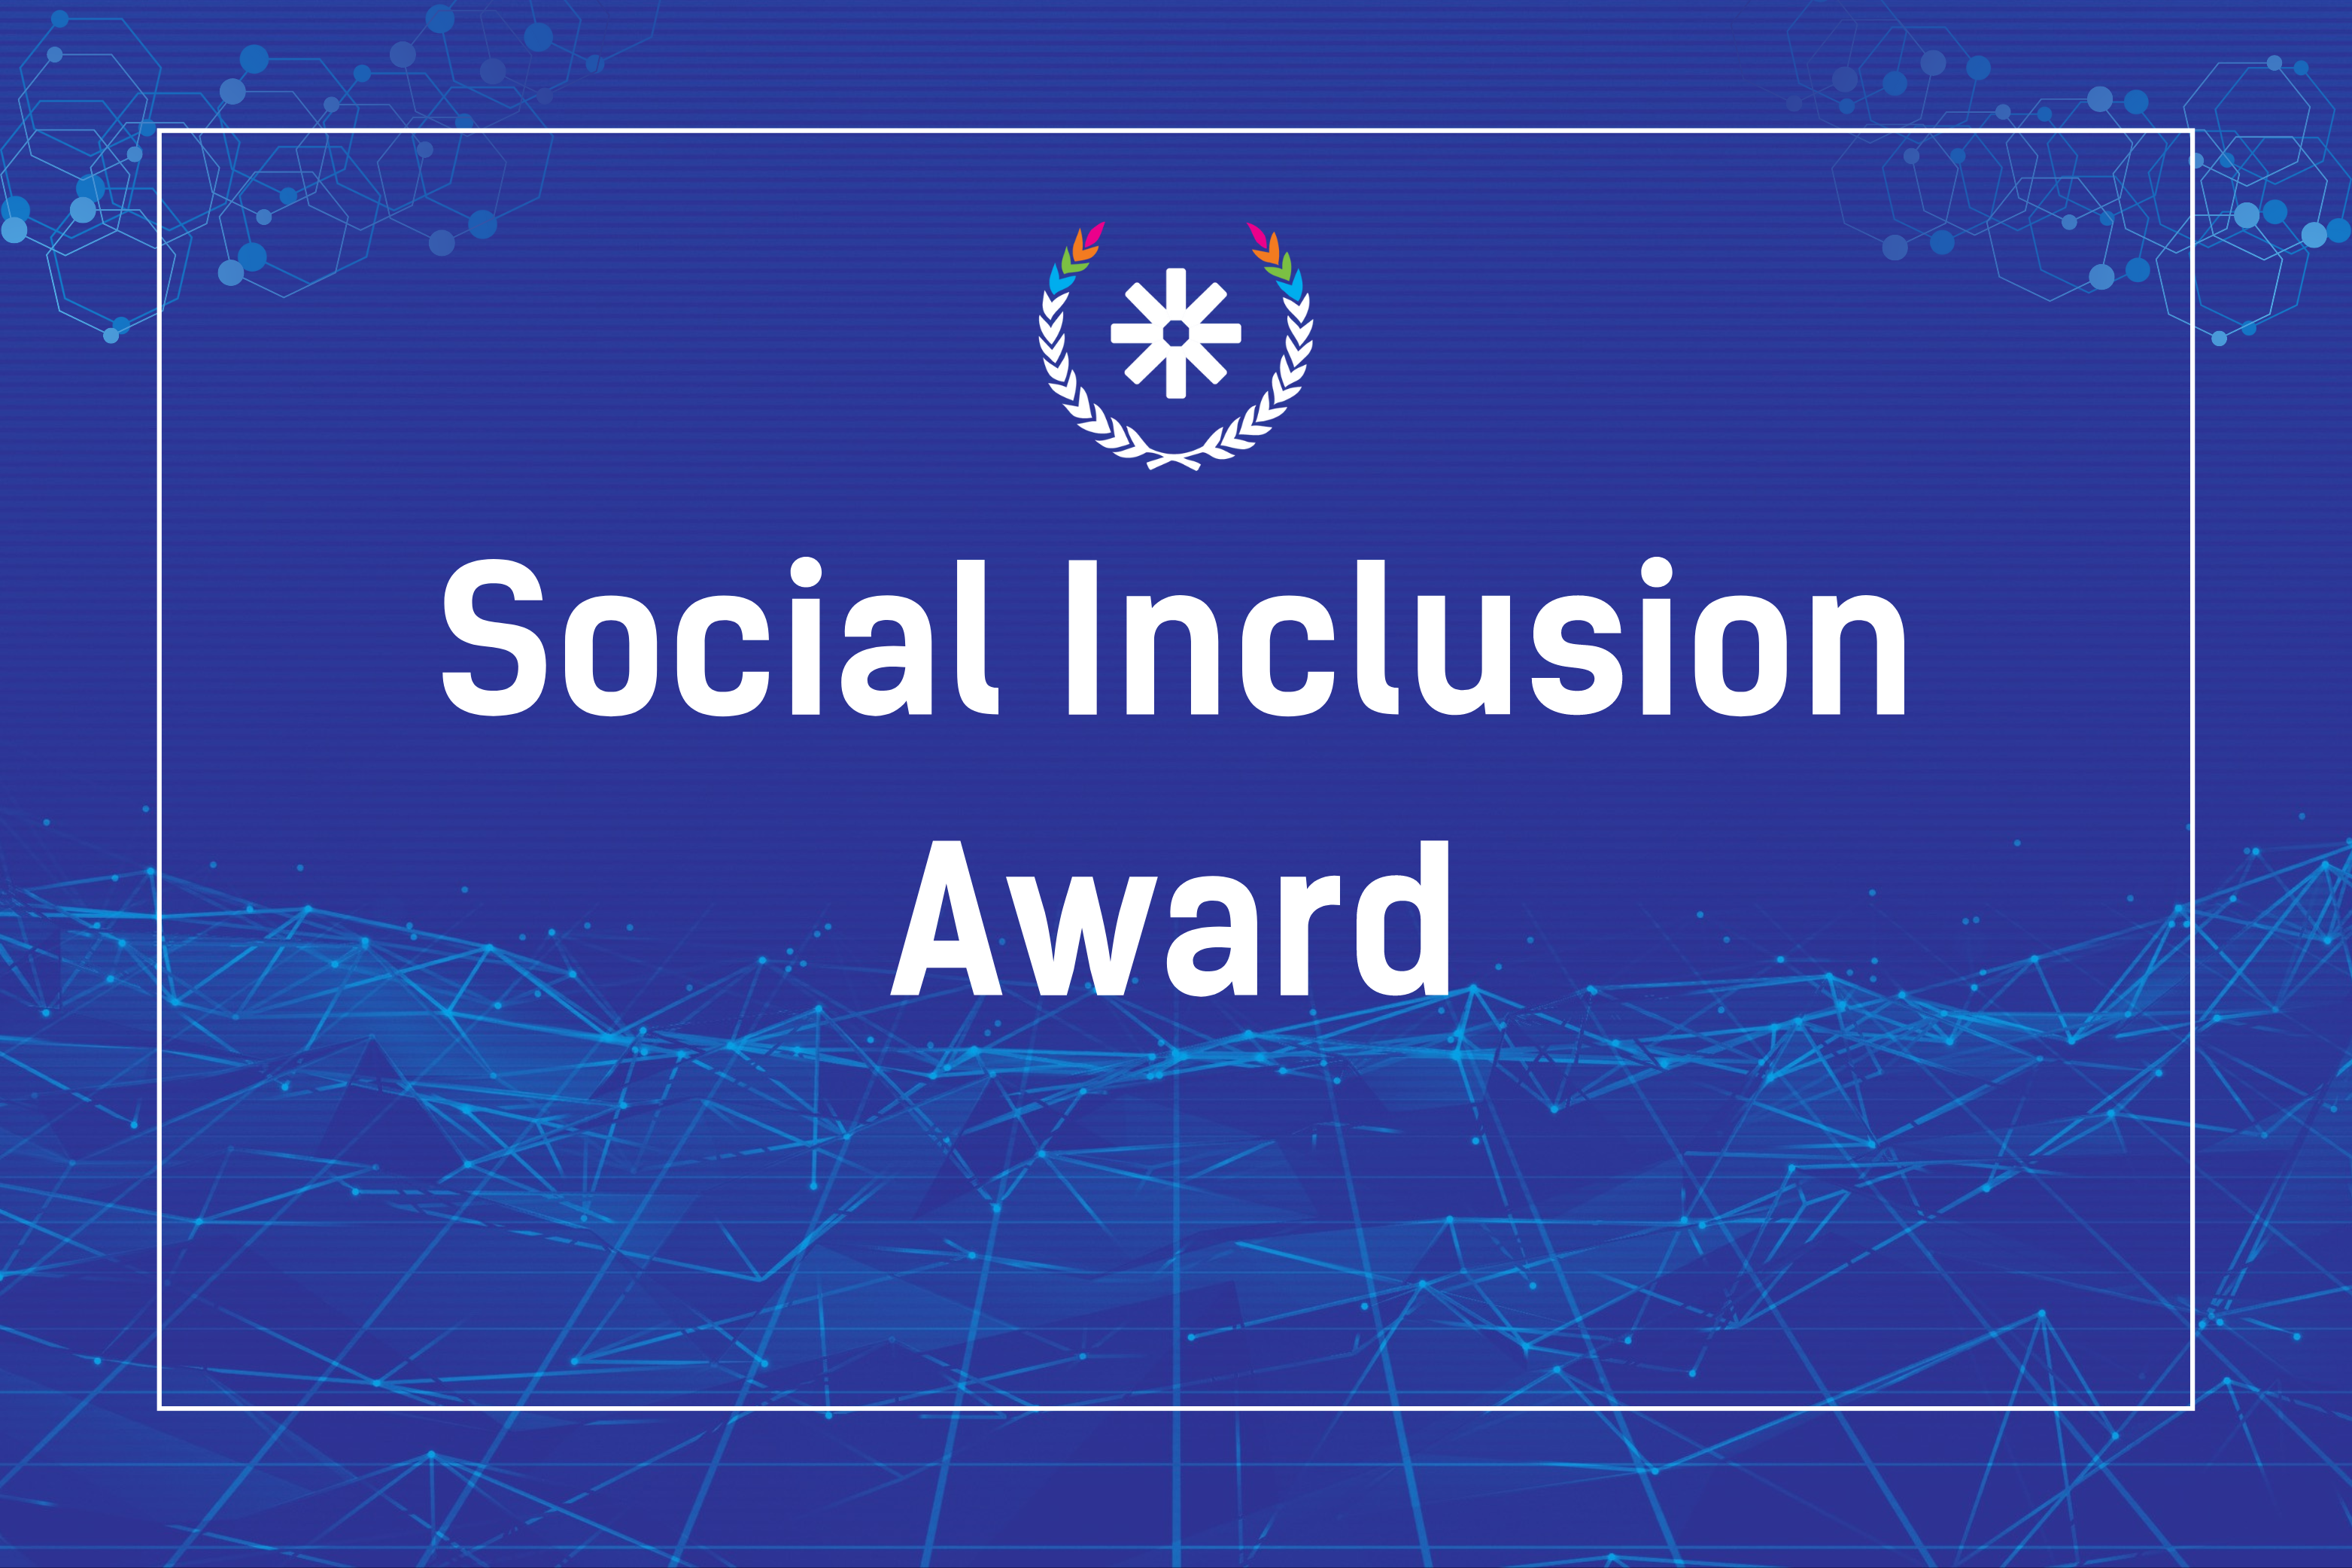 SocialInclusion Award